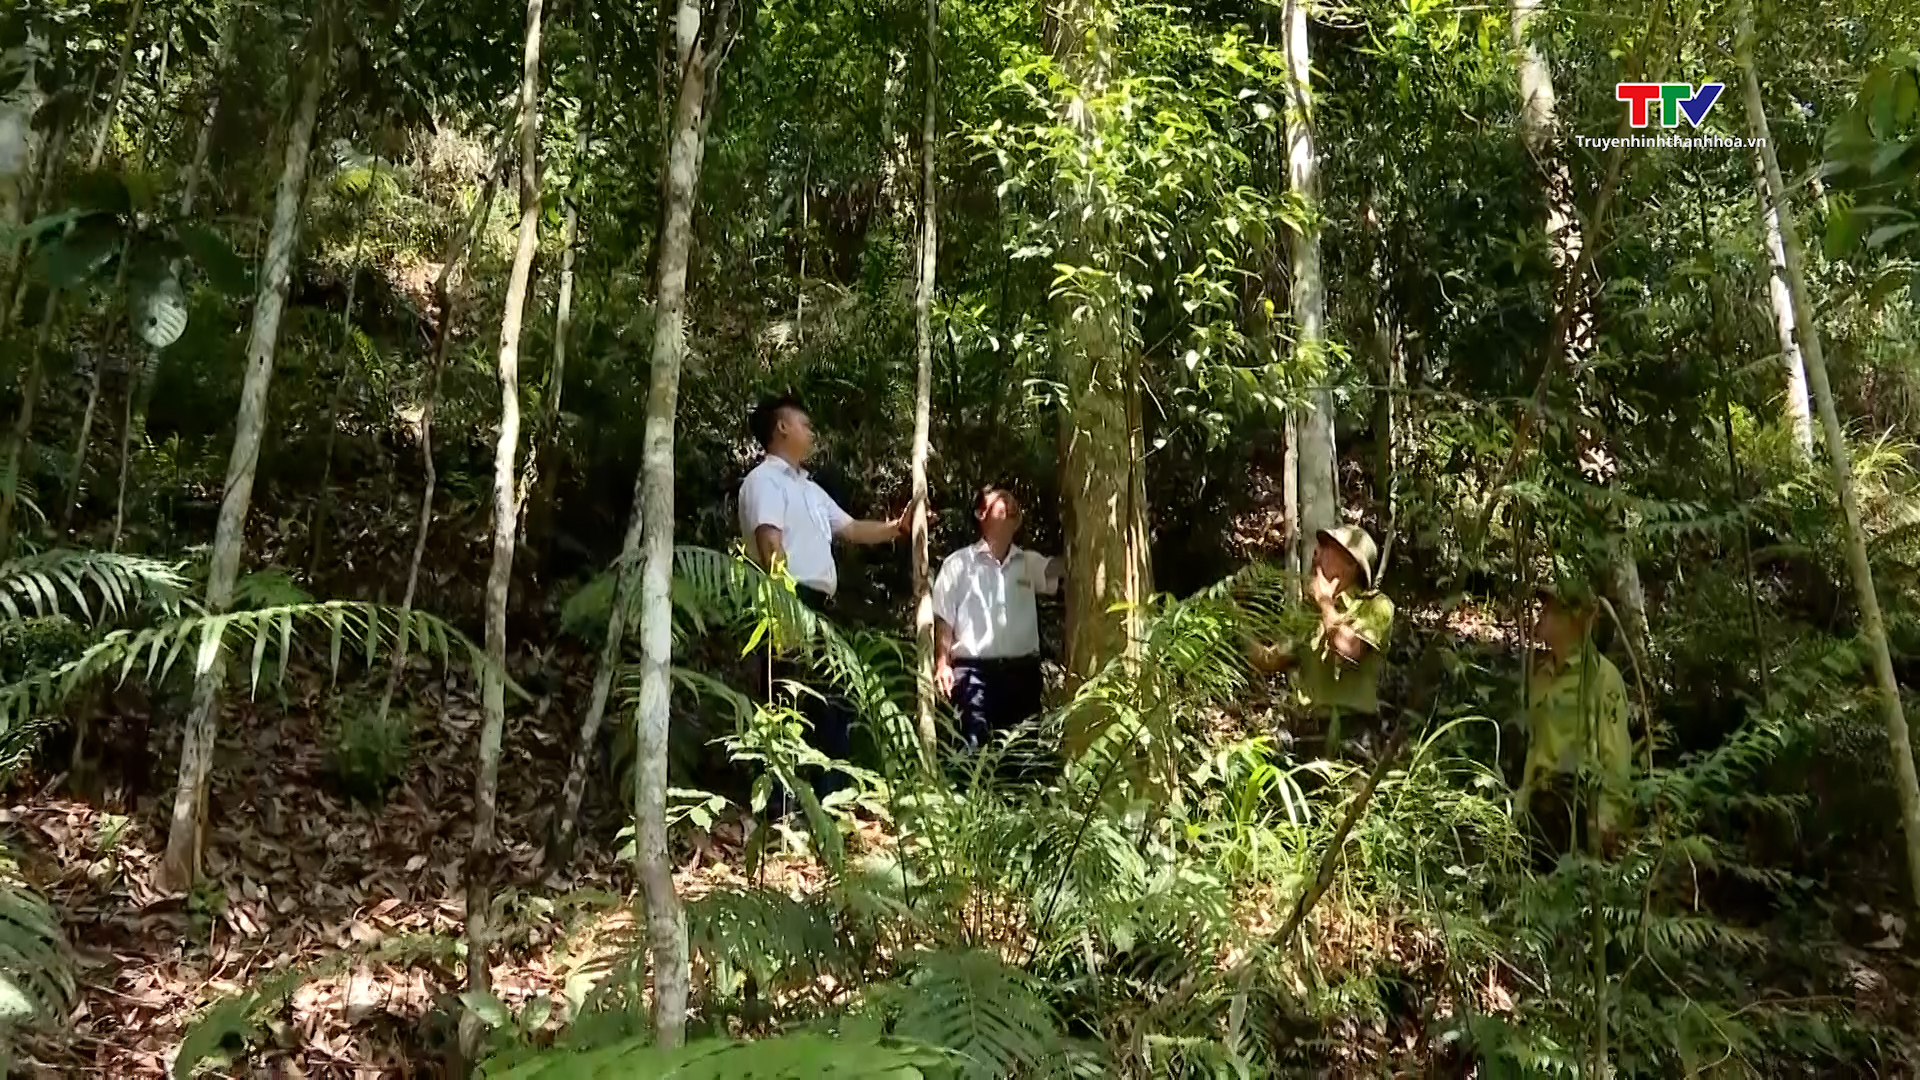 Tăng cường công tác tuyên truyền pháp luật về bảo vệ rừng ở miền núi Thanh Hóa - Ảnh 5.